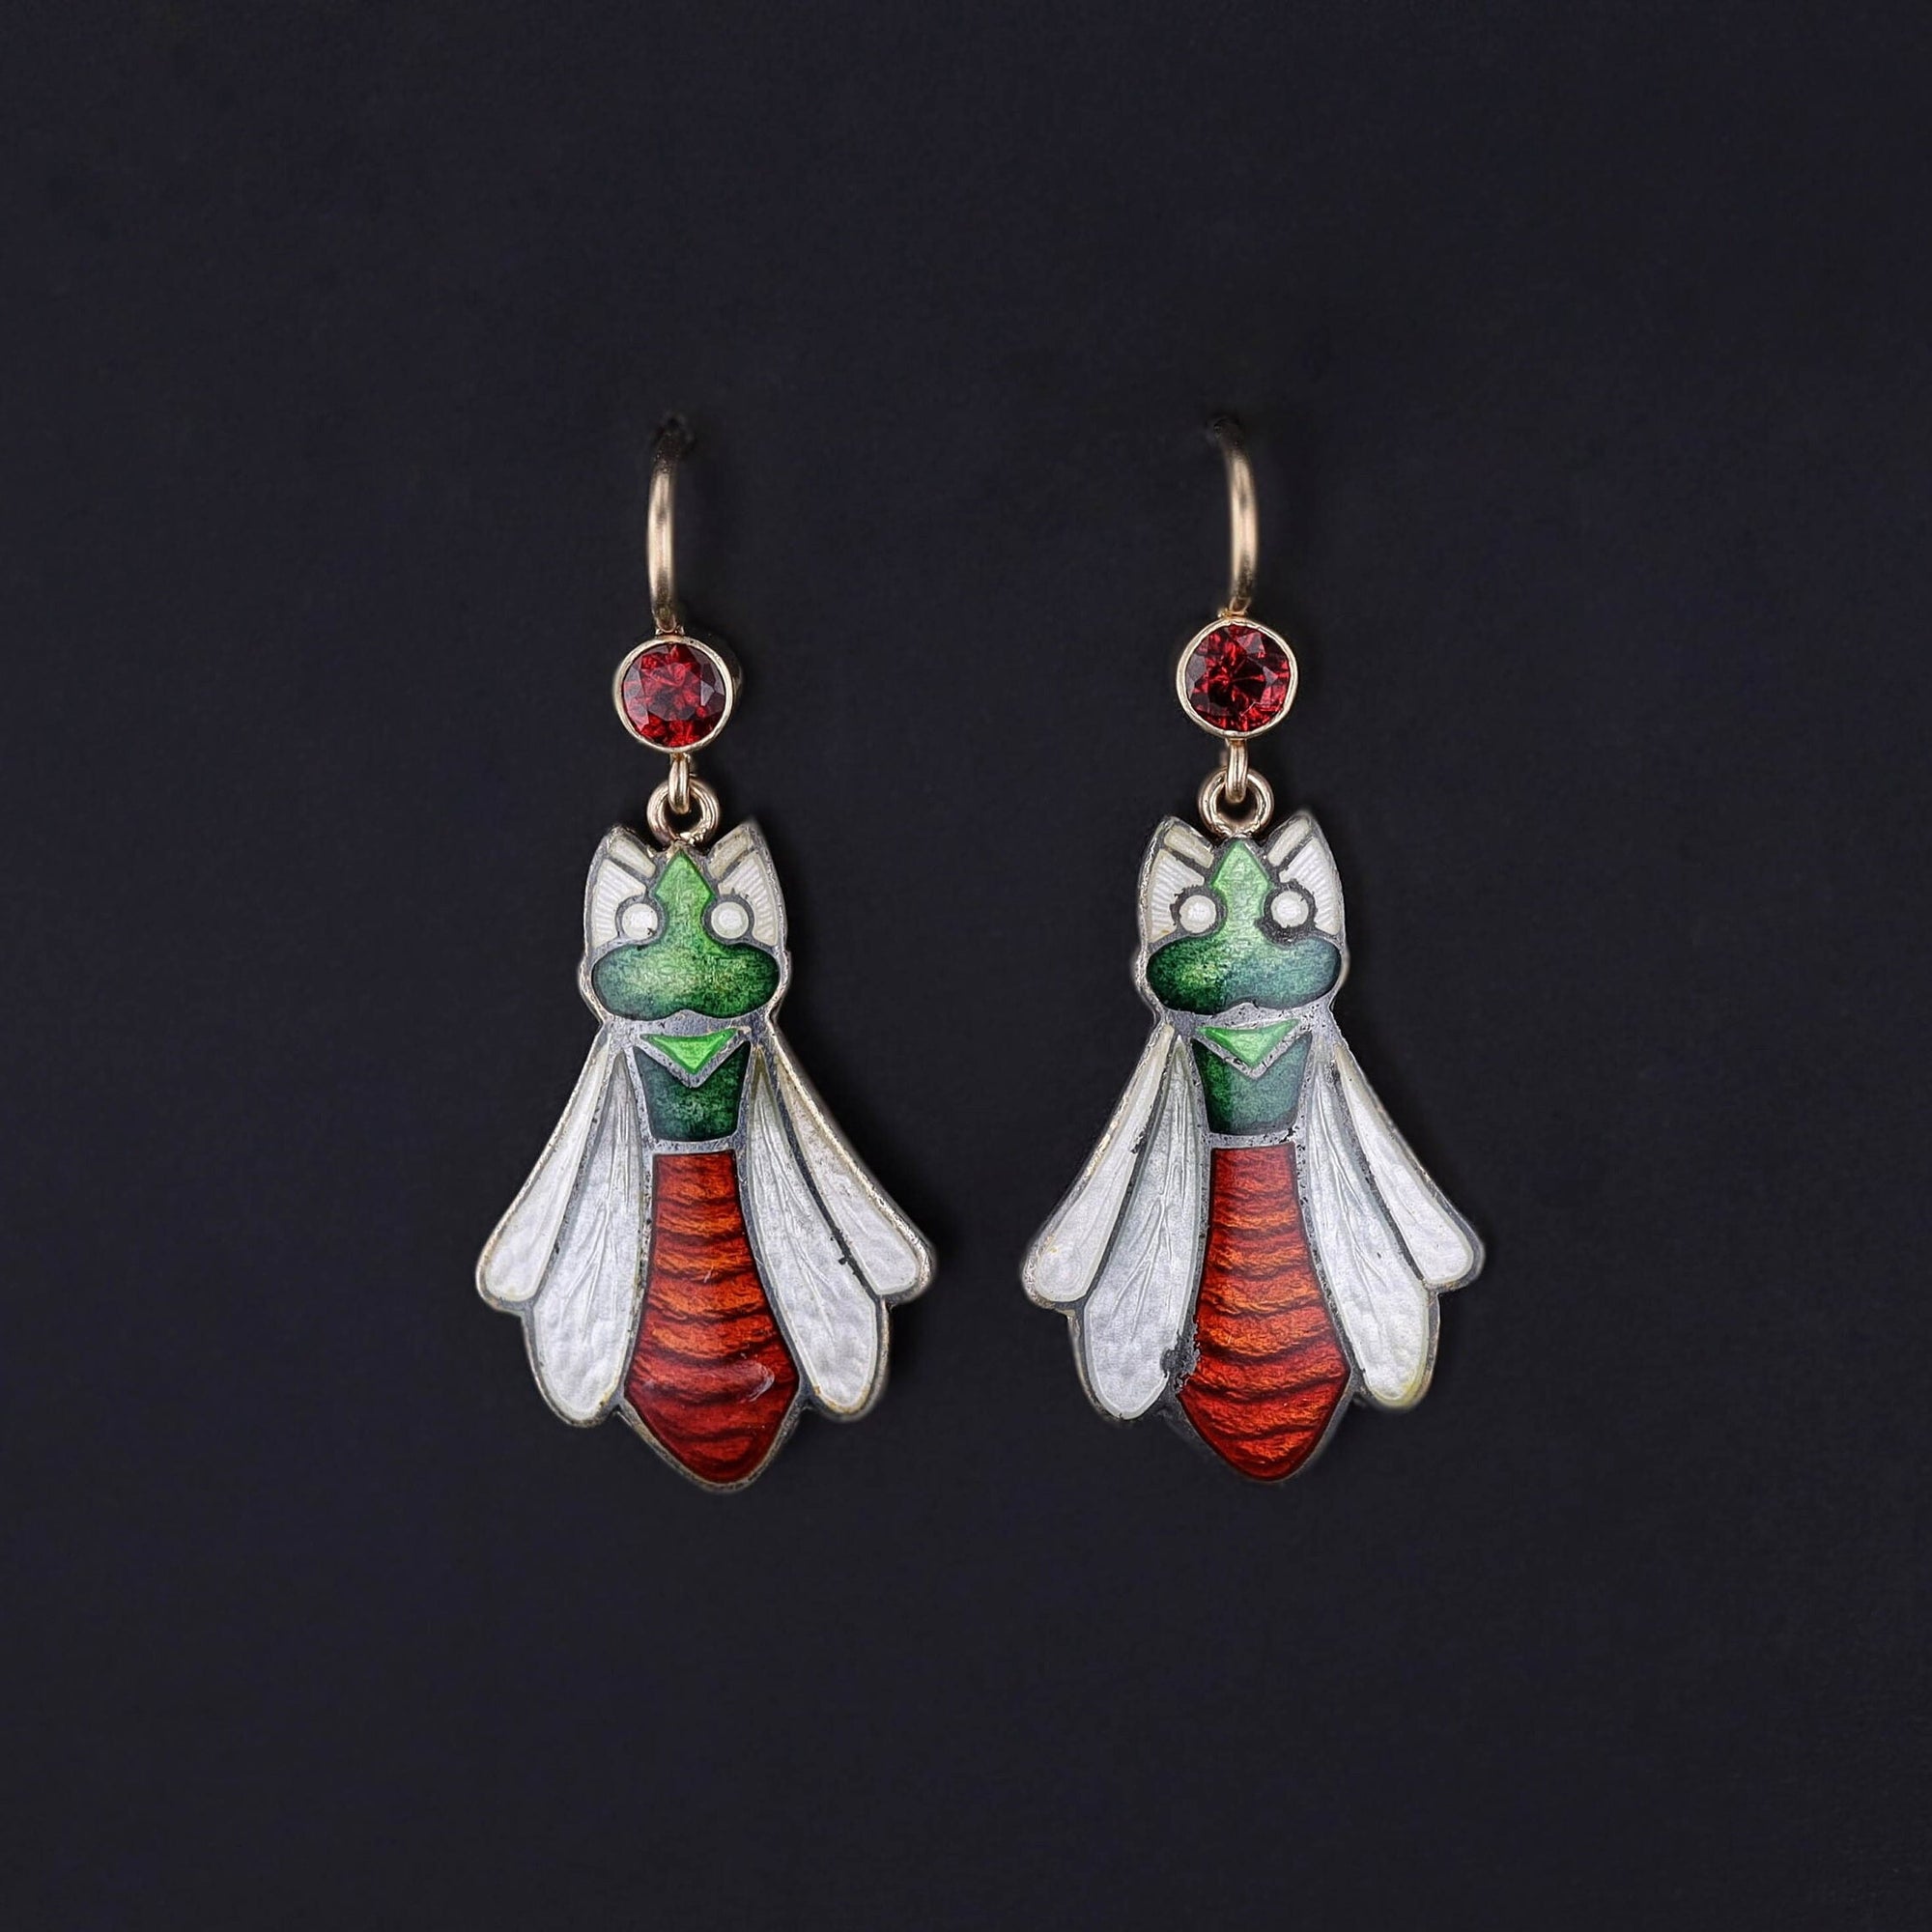 Antique Enamel & Garnet Bug Earrings